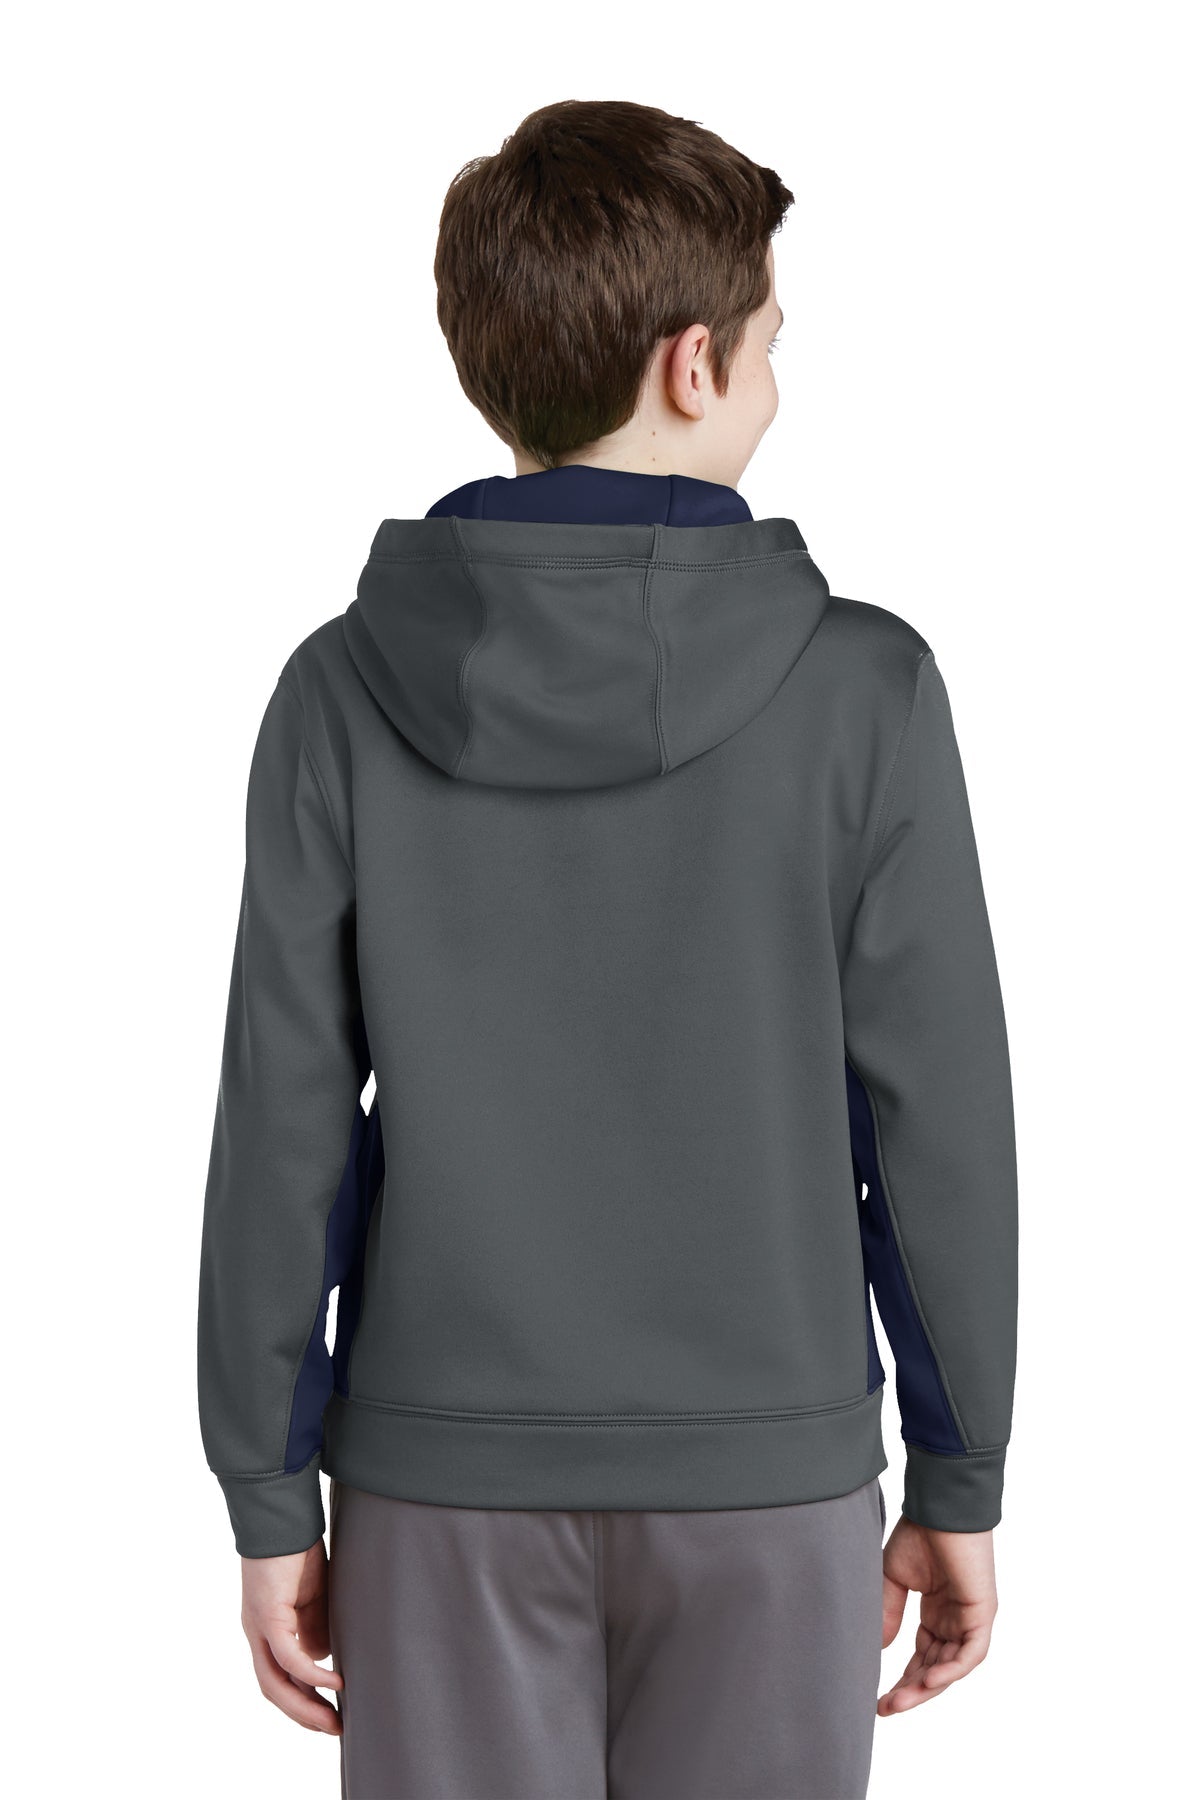 YST235 Sport-Tek® Youth Sport-Wick® Fleece Colorblock Hooded Pullover